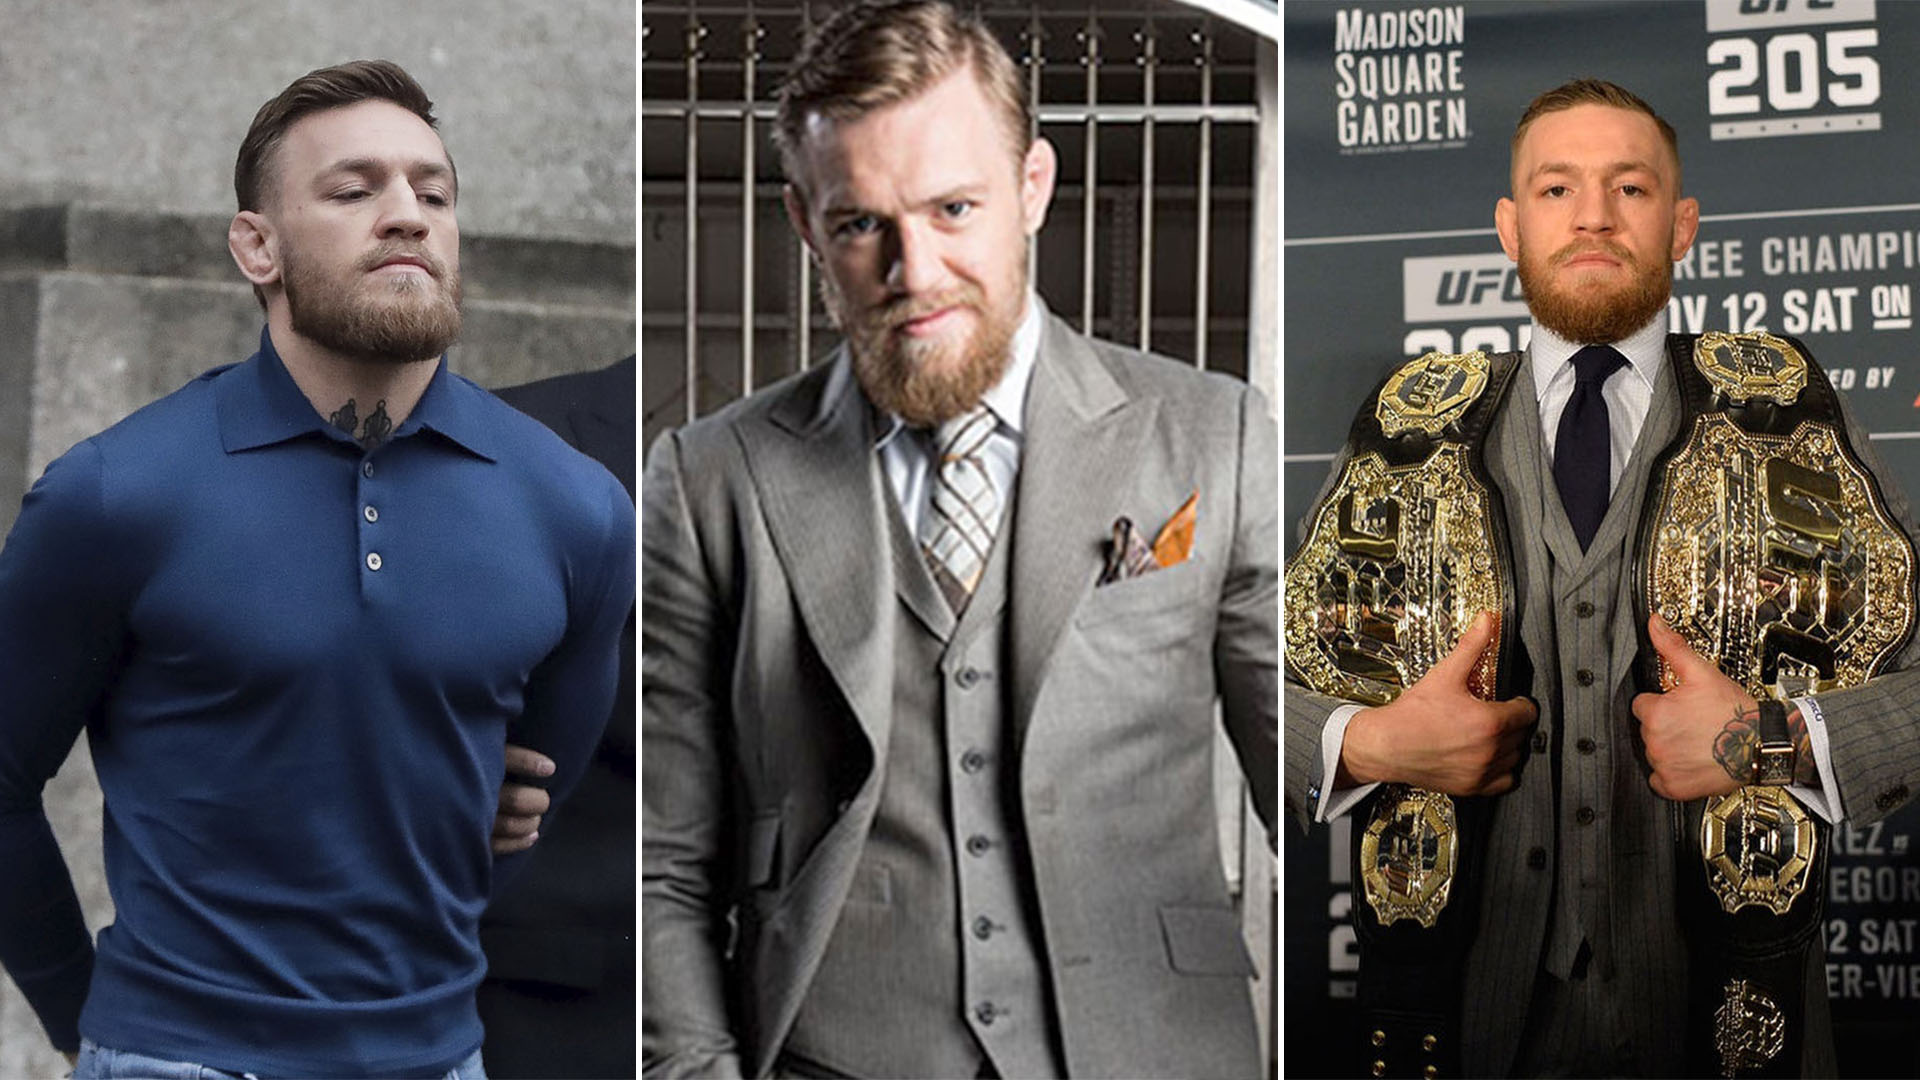 Escándalos, lujos, excentricidades e históricas peleas: así construyó McGregor su personaje como máxima estrella de la UFC